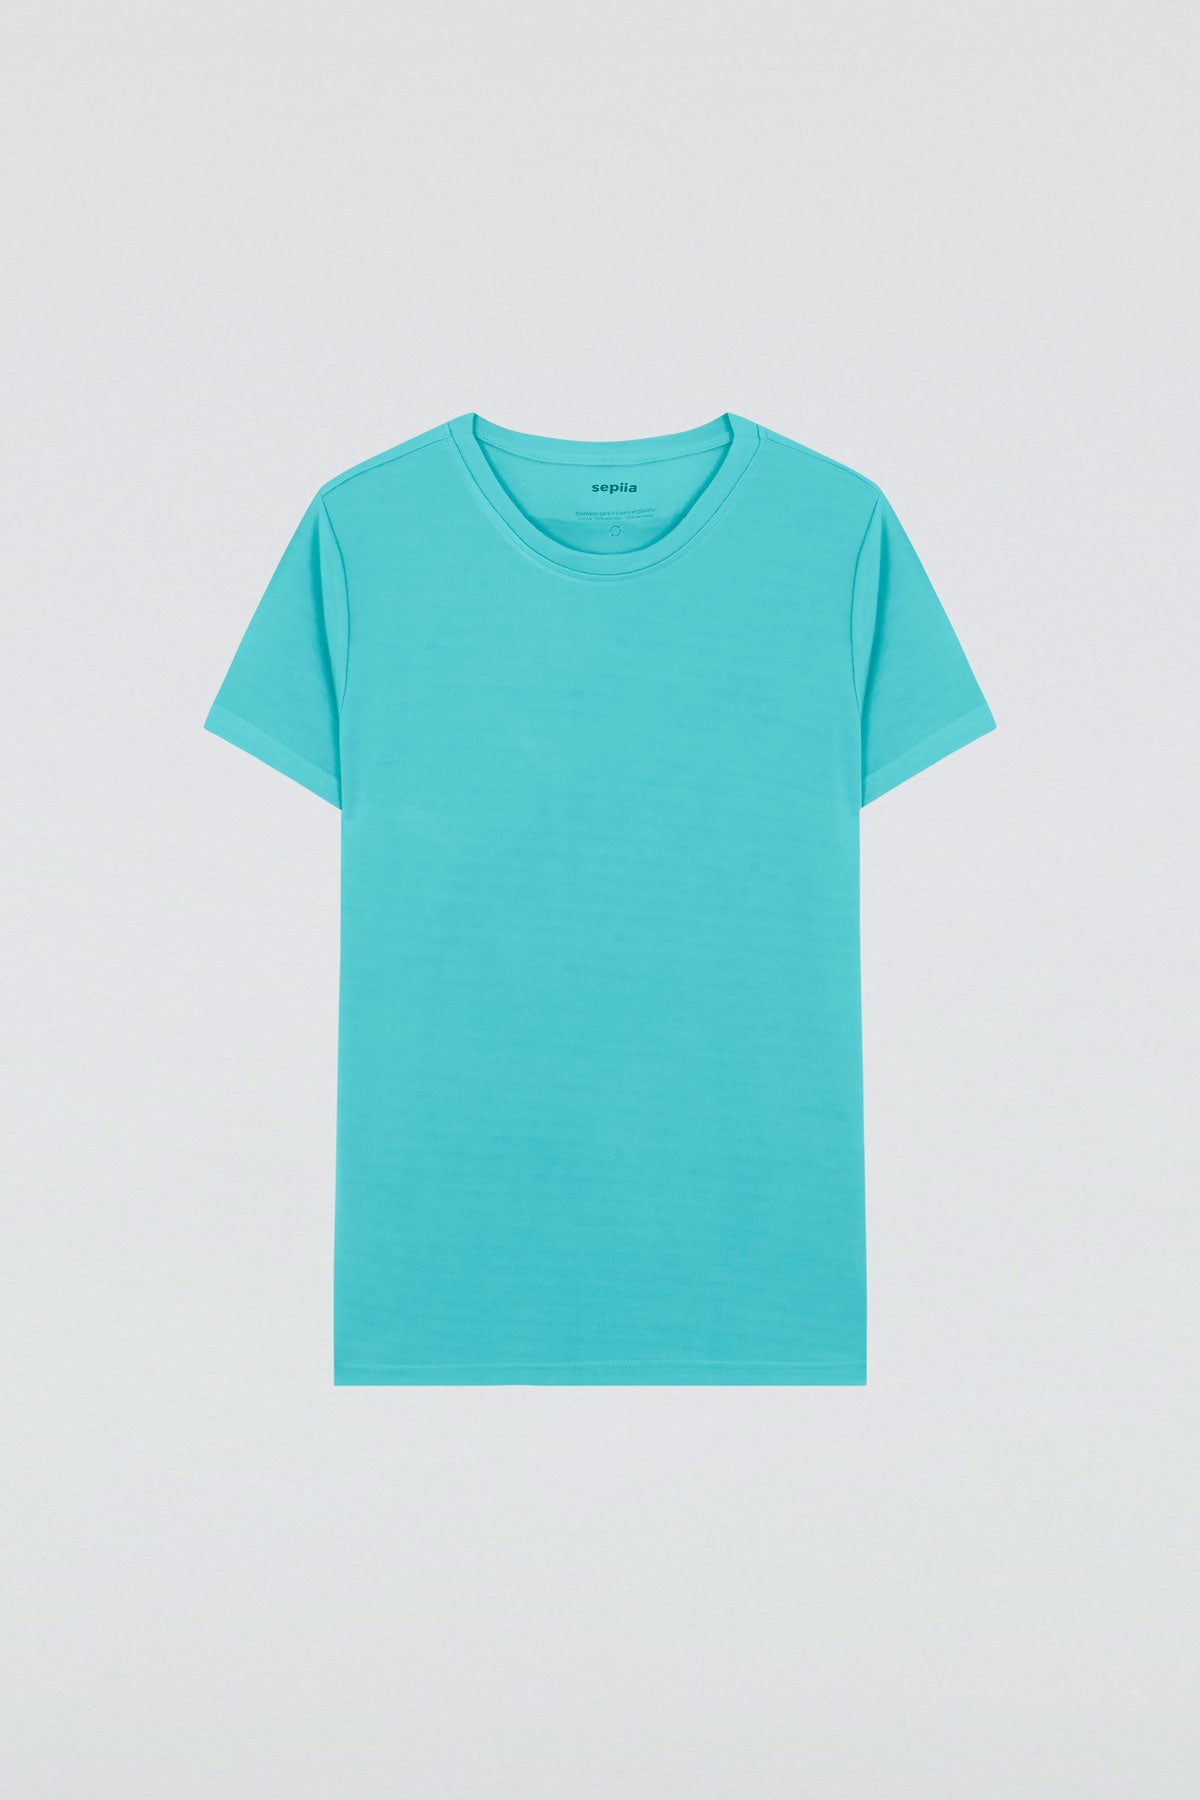 Camiseta básica de mujer azul morpho de manga corta y cuello redondo, perfecta para cualquier look. Foto plano